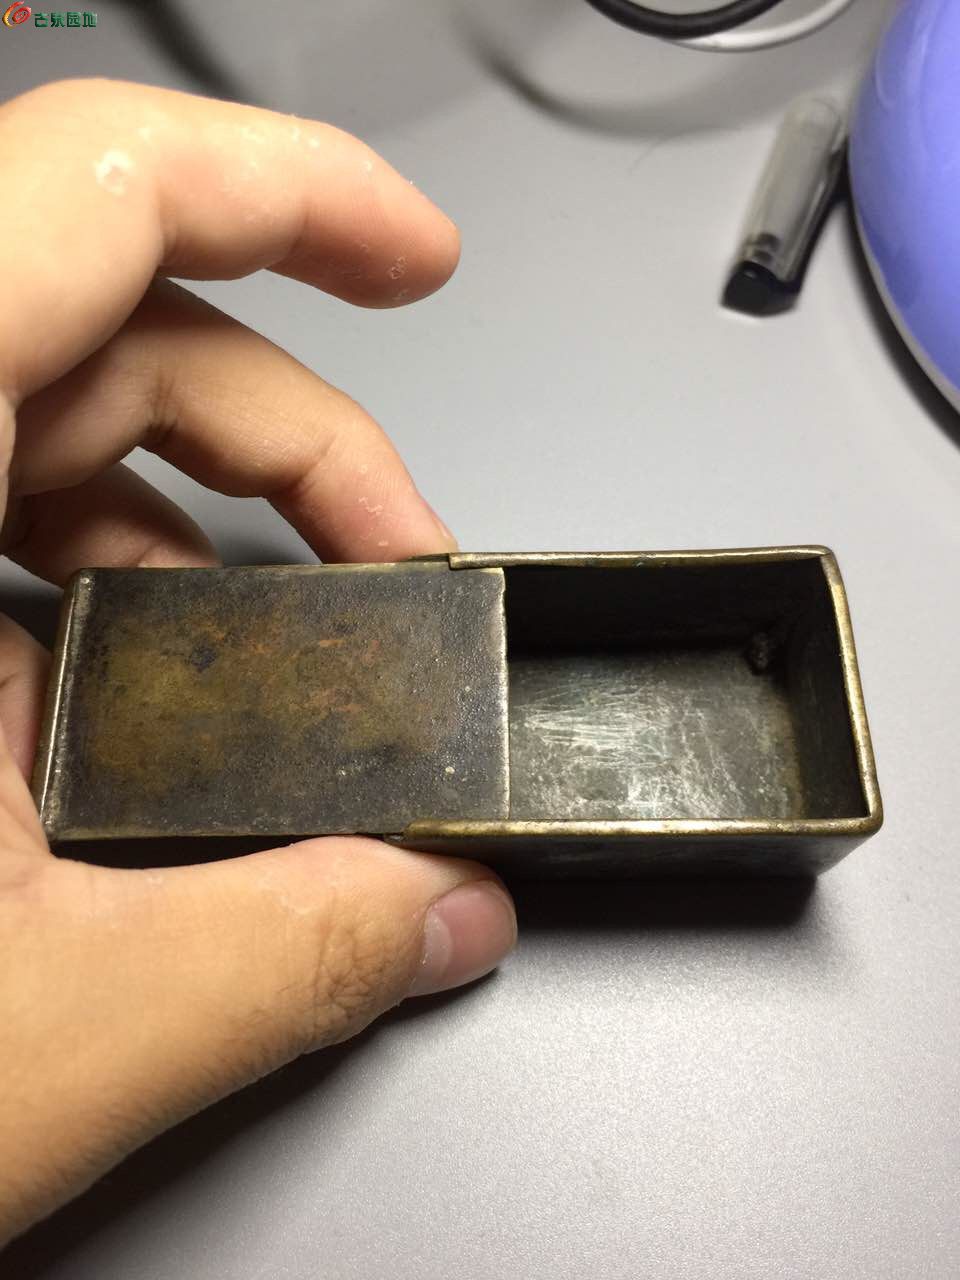 铜烟膏盒图片